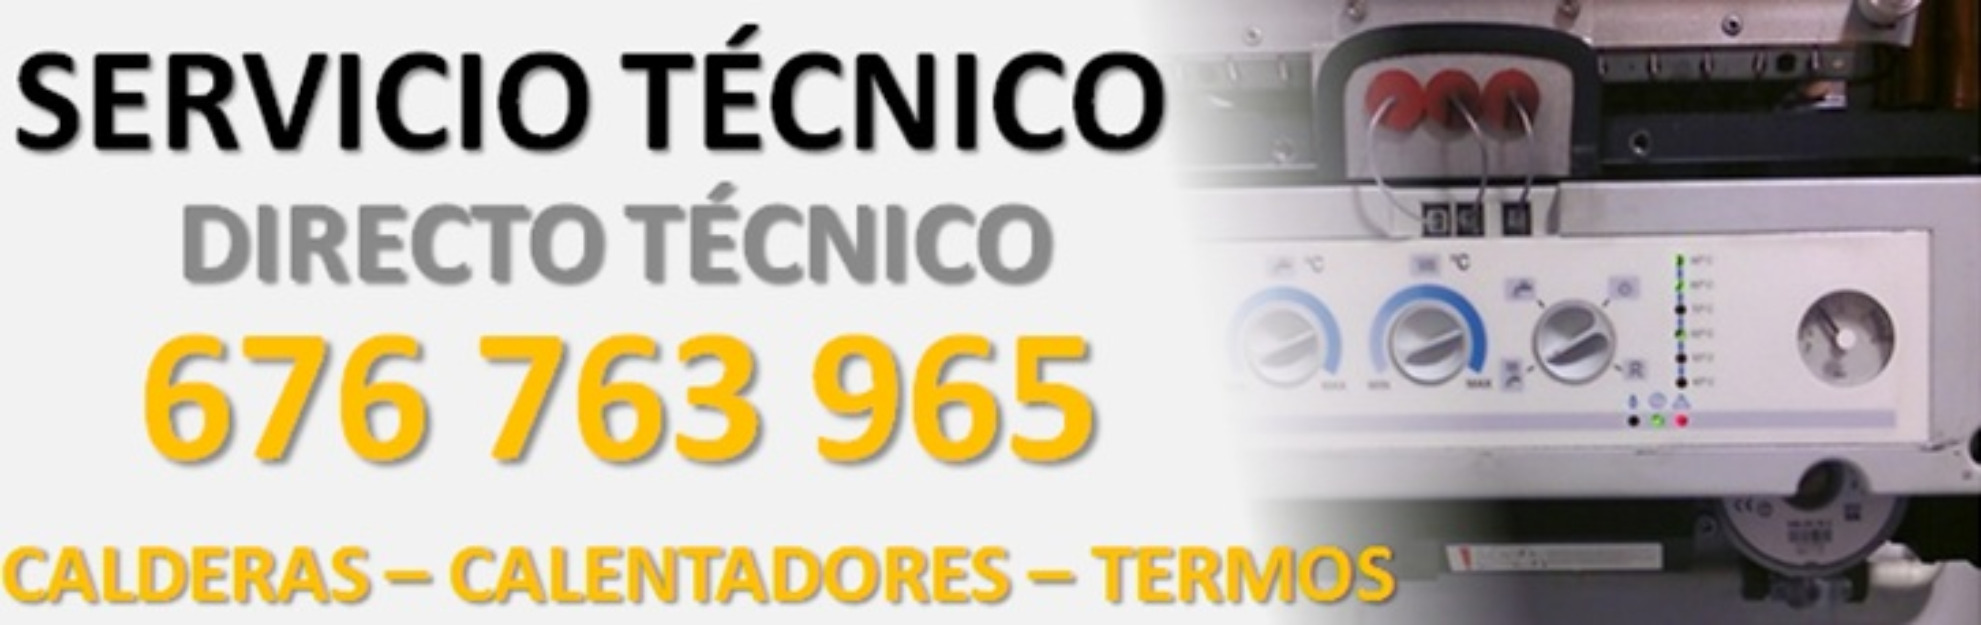 Servicio Tecnico Roca Madrid 914280927 ~